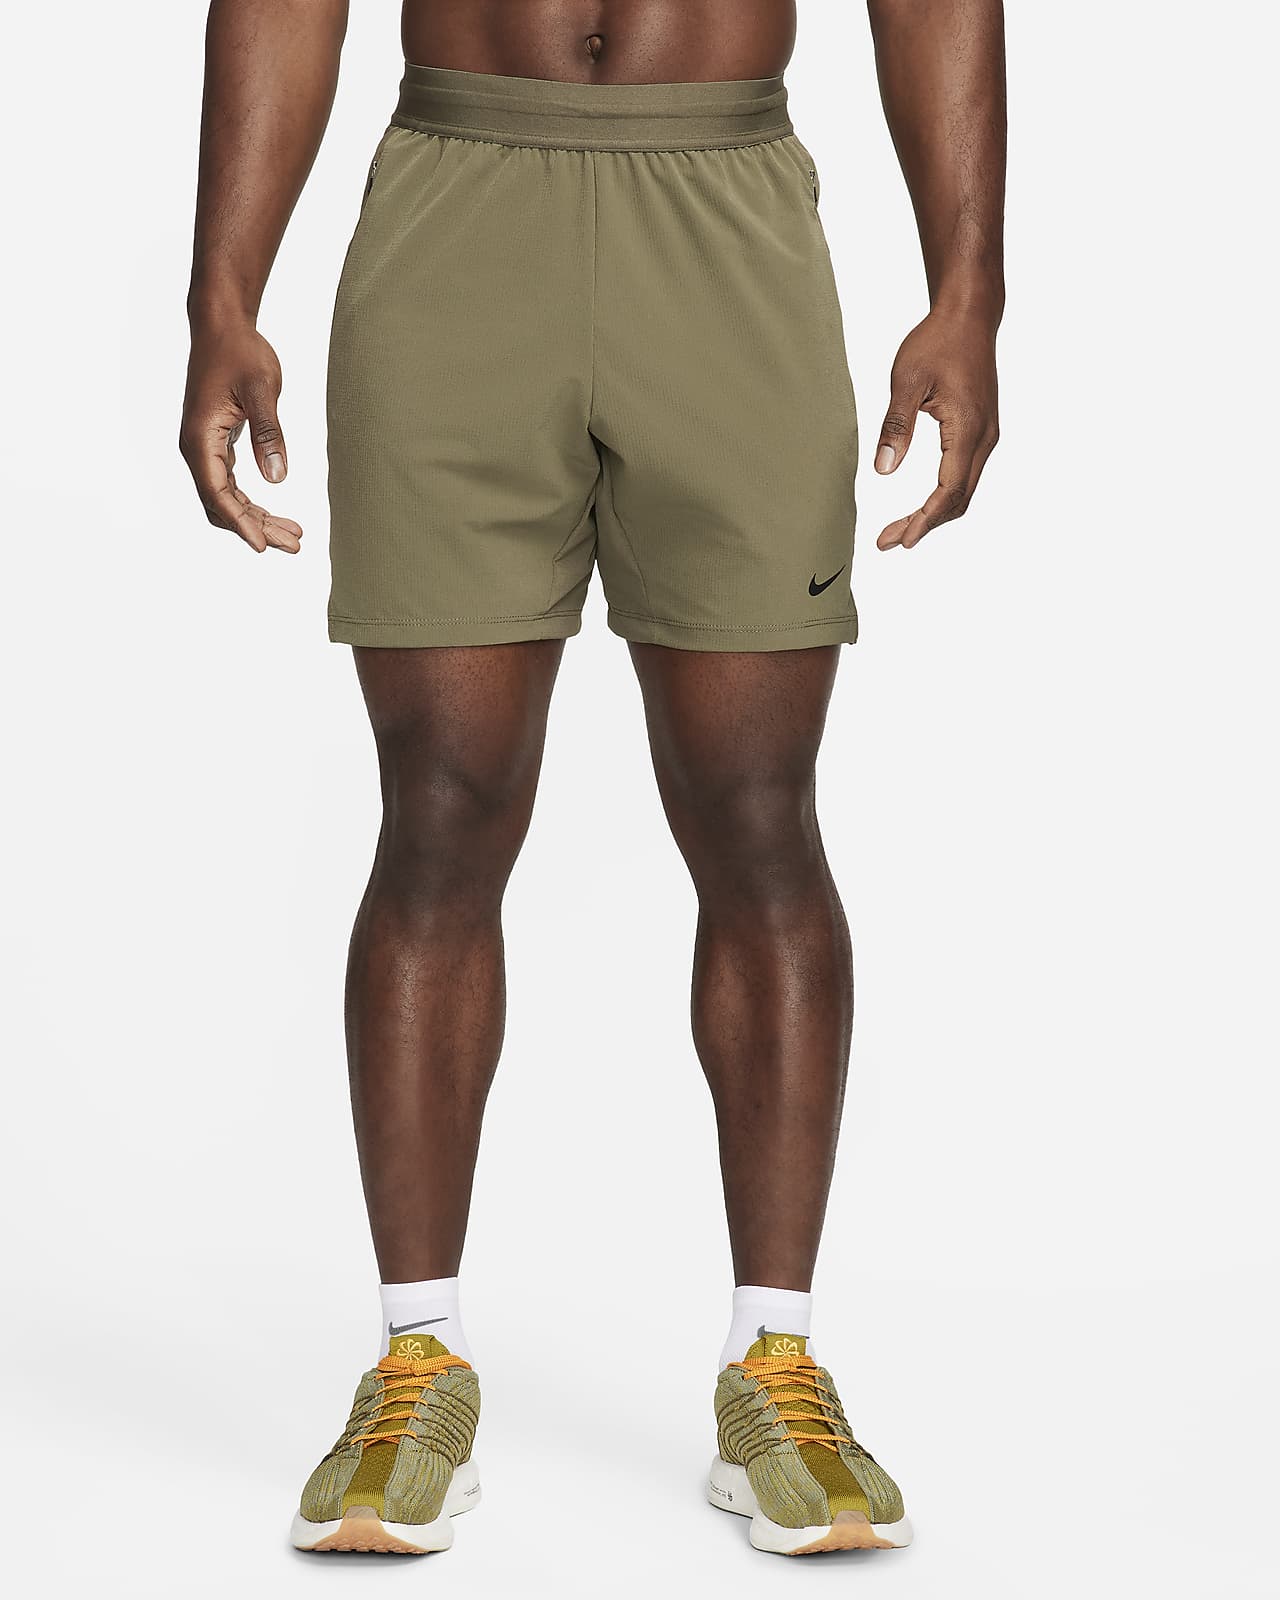 Nike Flex Rep 4.0 Pantalón corto deportivo Dri-FIT de 18 cm sin forro - Hombre